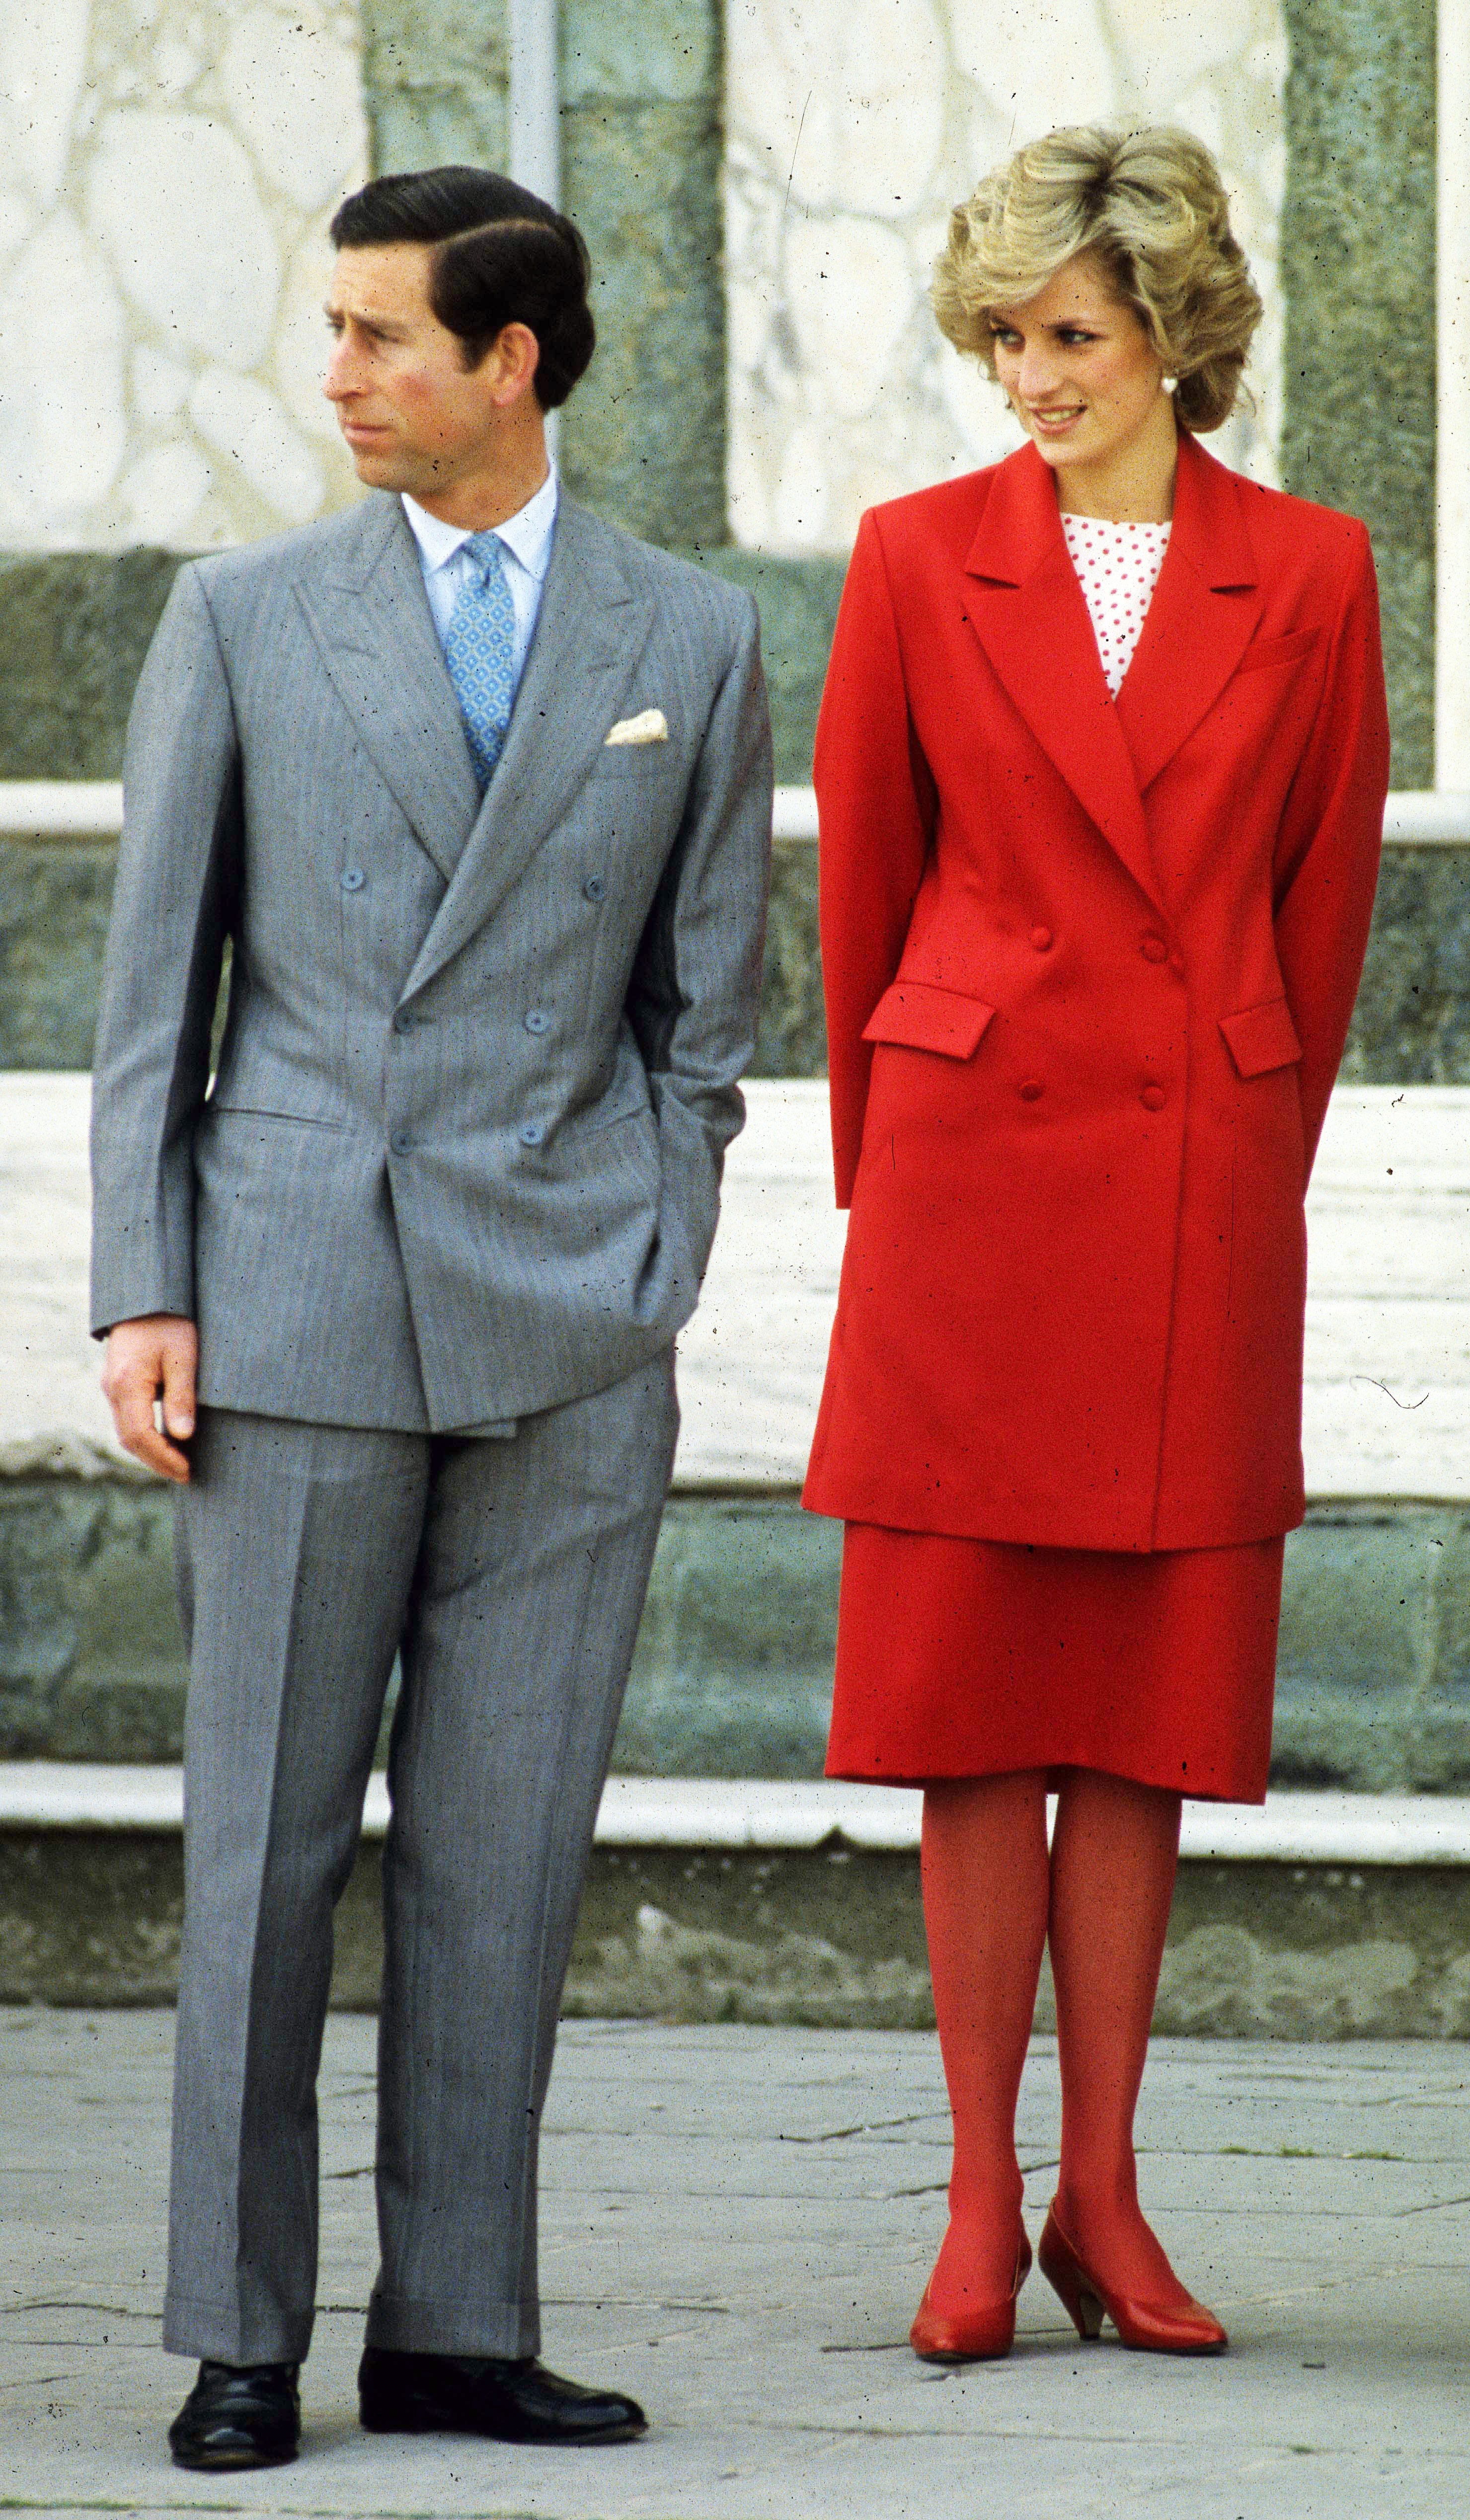 Prinzessin Diana mit Prinz Charles in Florenz.  Er trägt ein.  Sie trägt einen grauen Herrenanzug, eine lange rote Jacke, einen roten Rock, rote Strumpfhosen und rote Schuhe, dazu ein rot-weiß gepunktetes Oberteil.